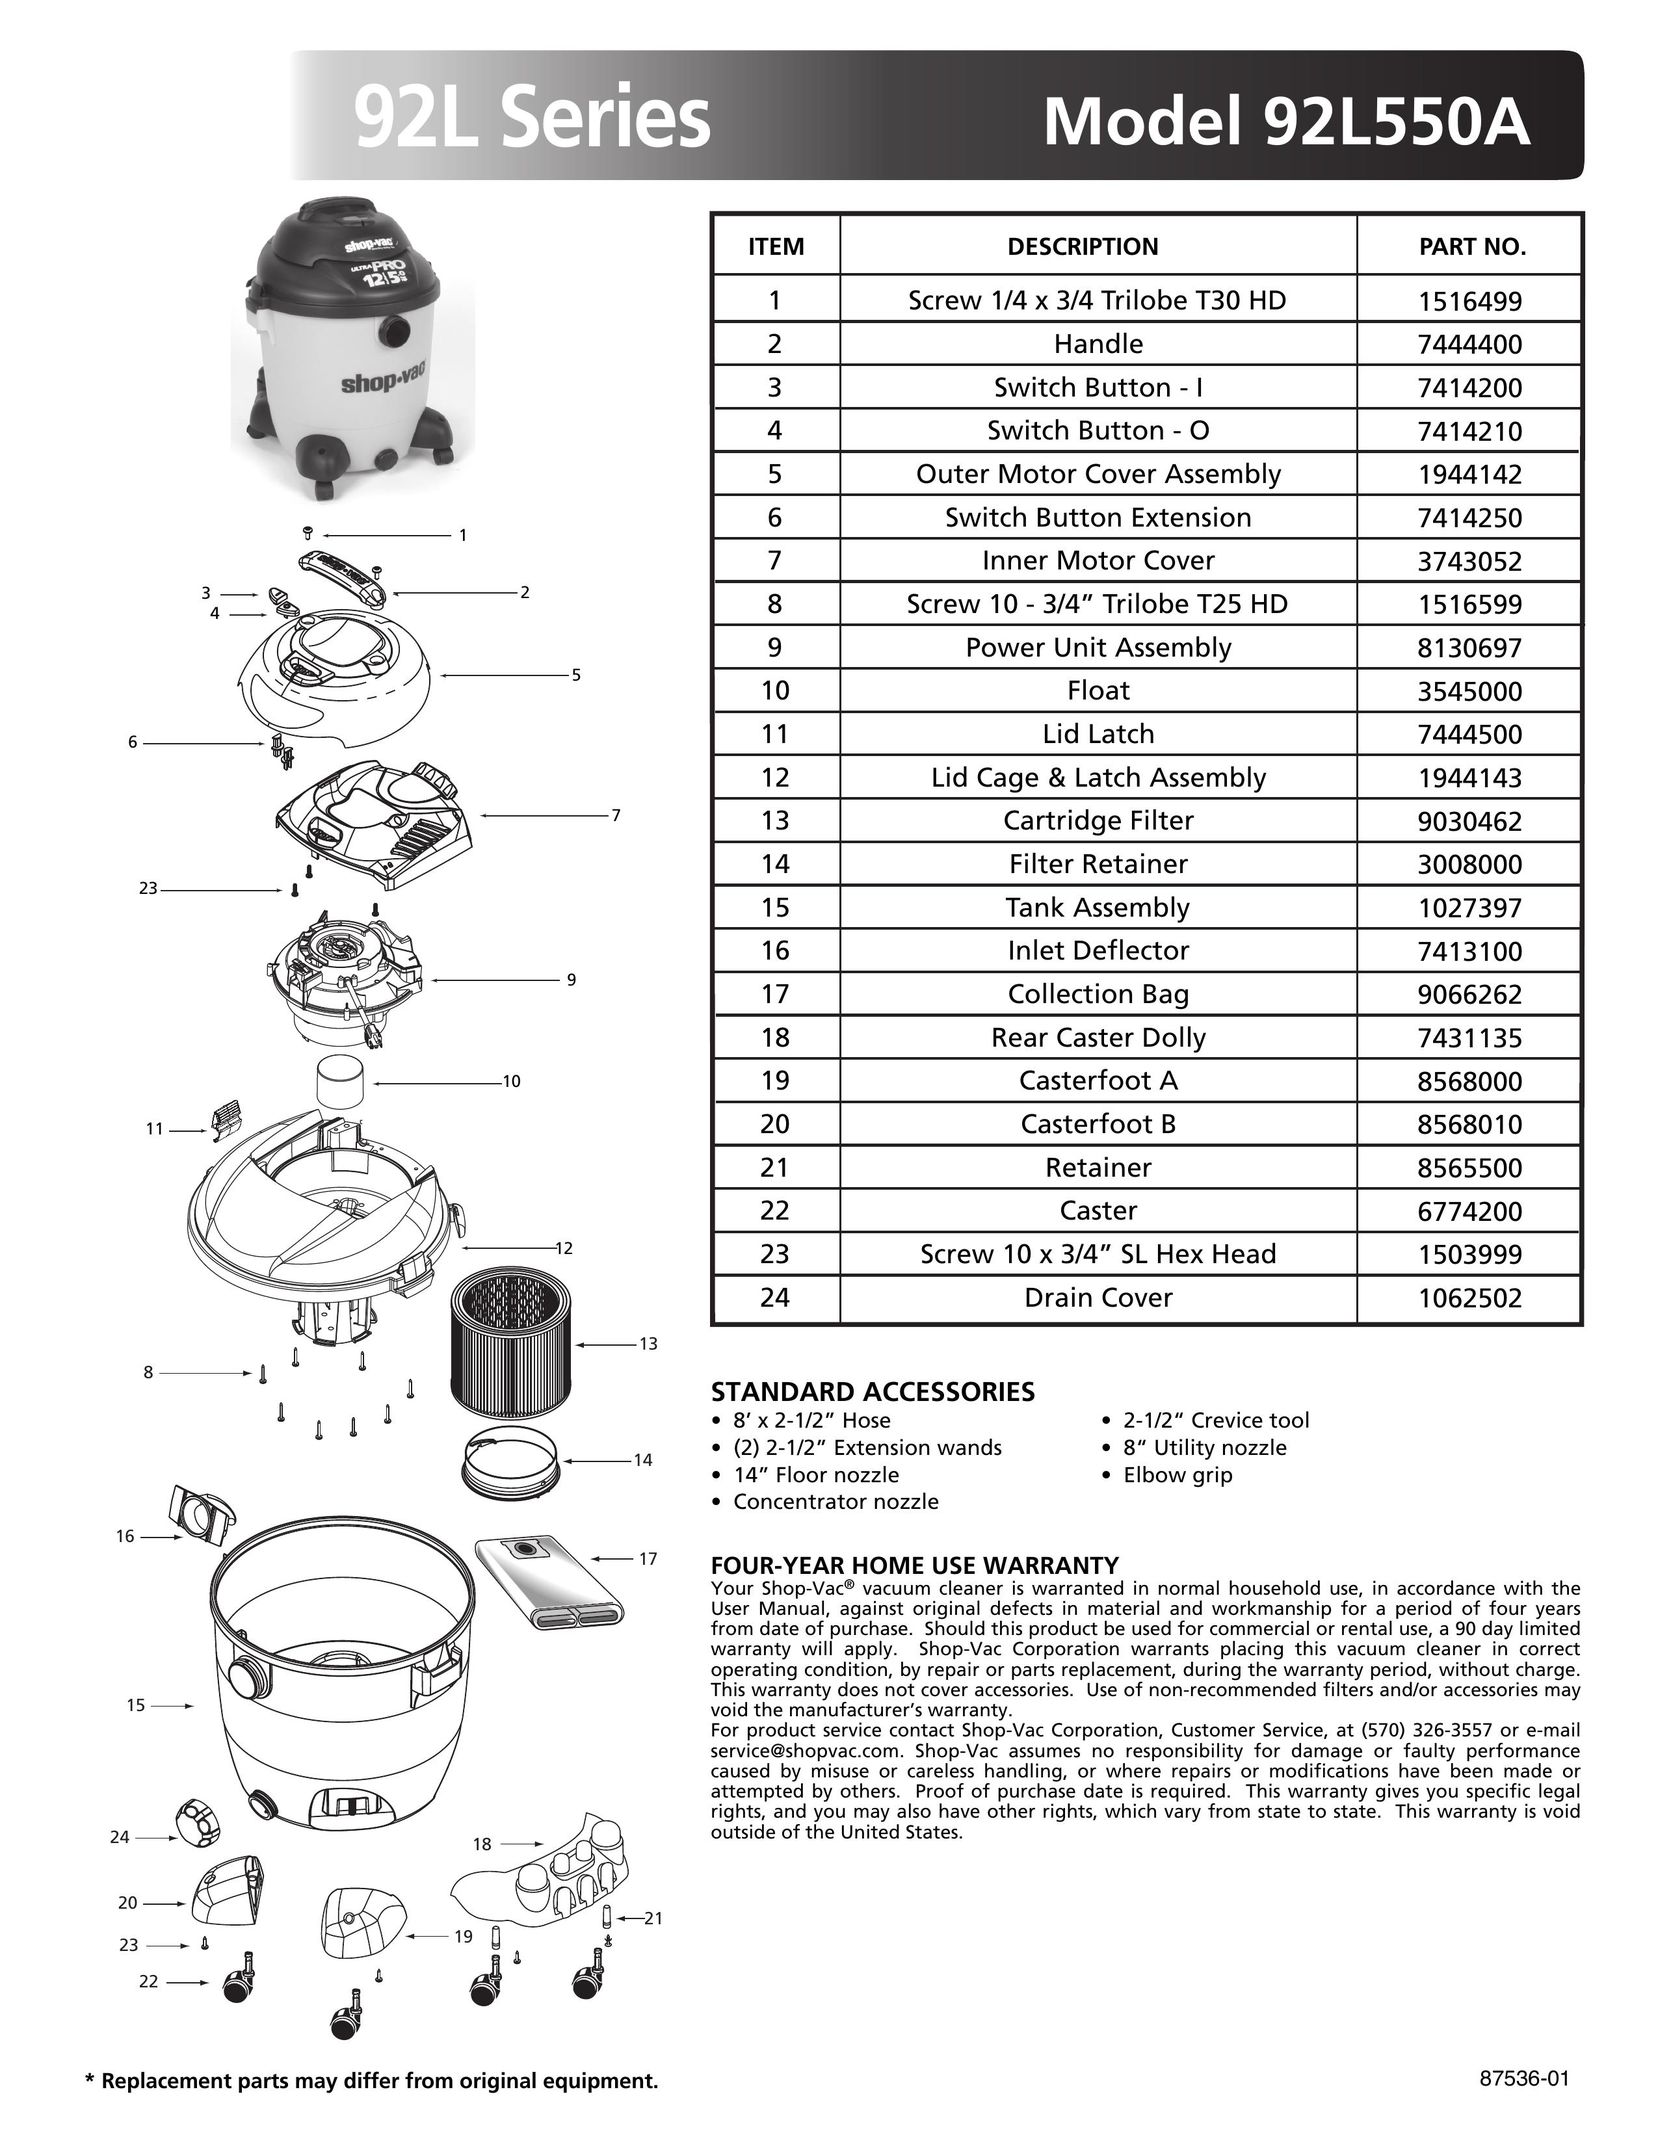 Shop-Vac 92L550A Vacuum Cleaner User Manual